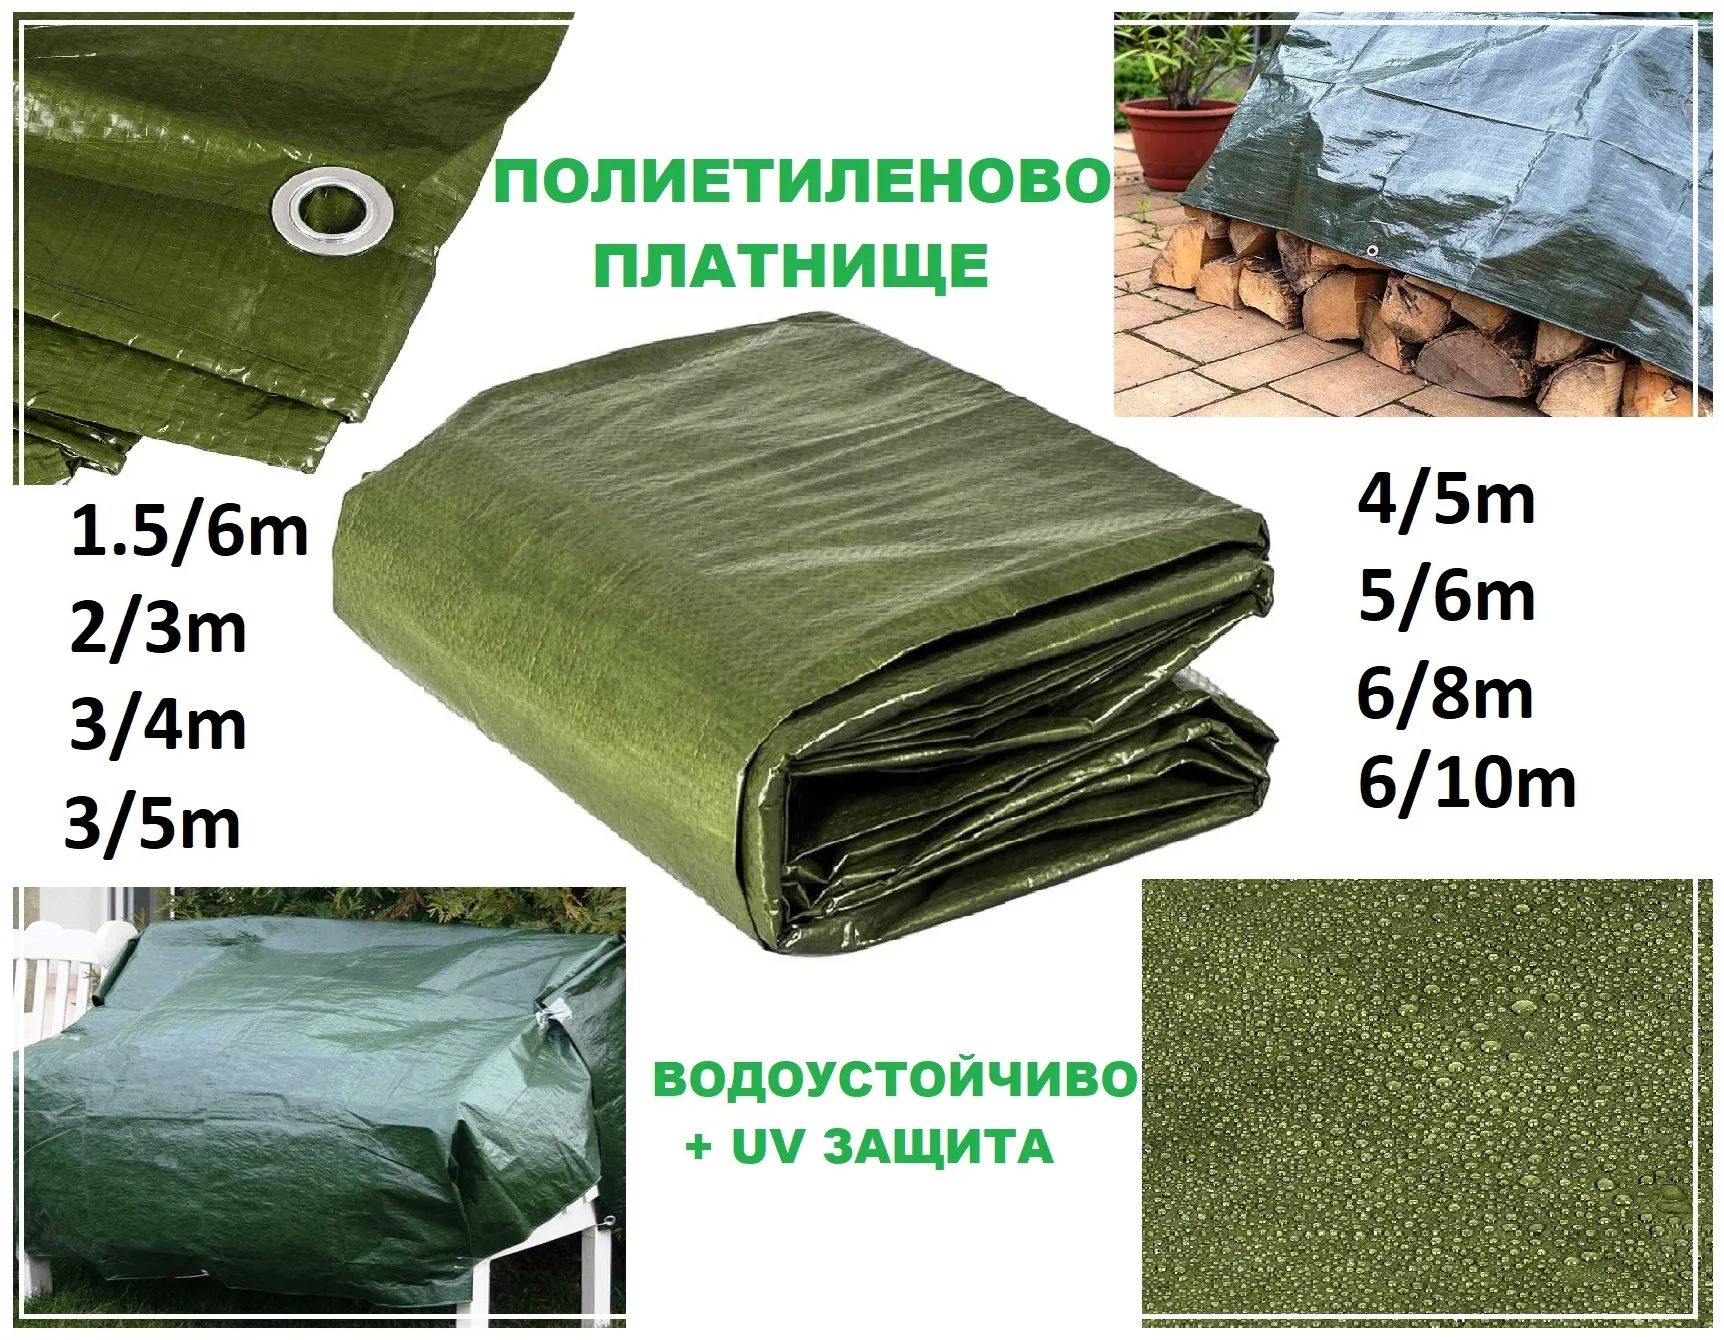 Полиетиленово платнище с UV защита 1,5/6м 2/3м 3/4м 3/5м 4/5м 5/6м 6/8м 6/10м, Подсилено в Зелен цвят, с халки | Iguana.bg 2